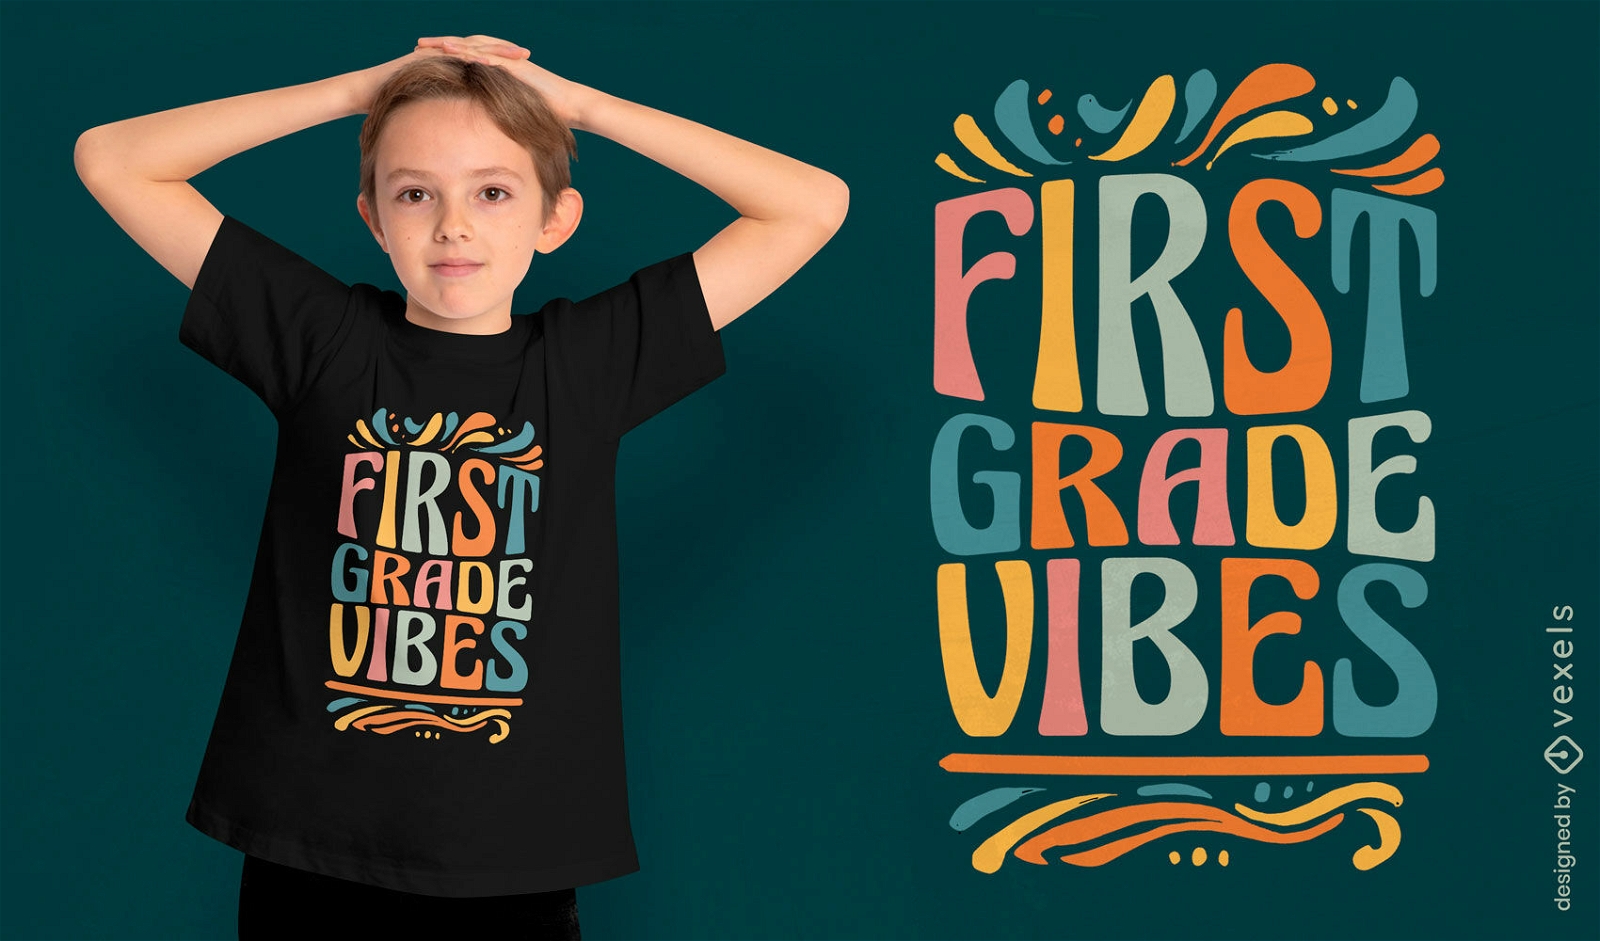 First grade vibes t-shirt design